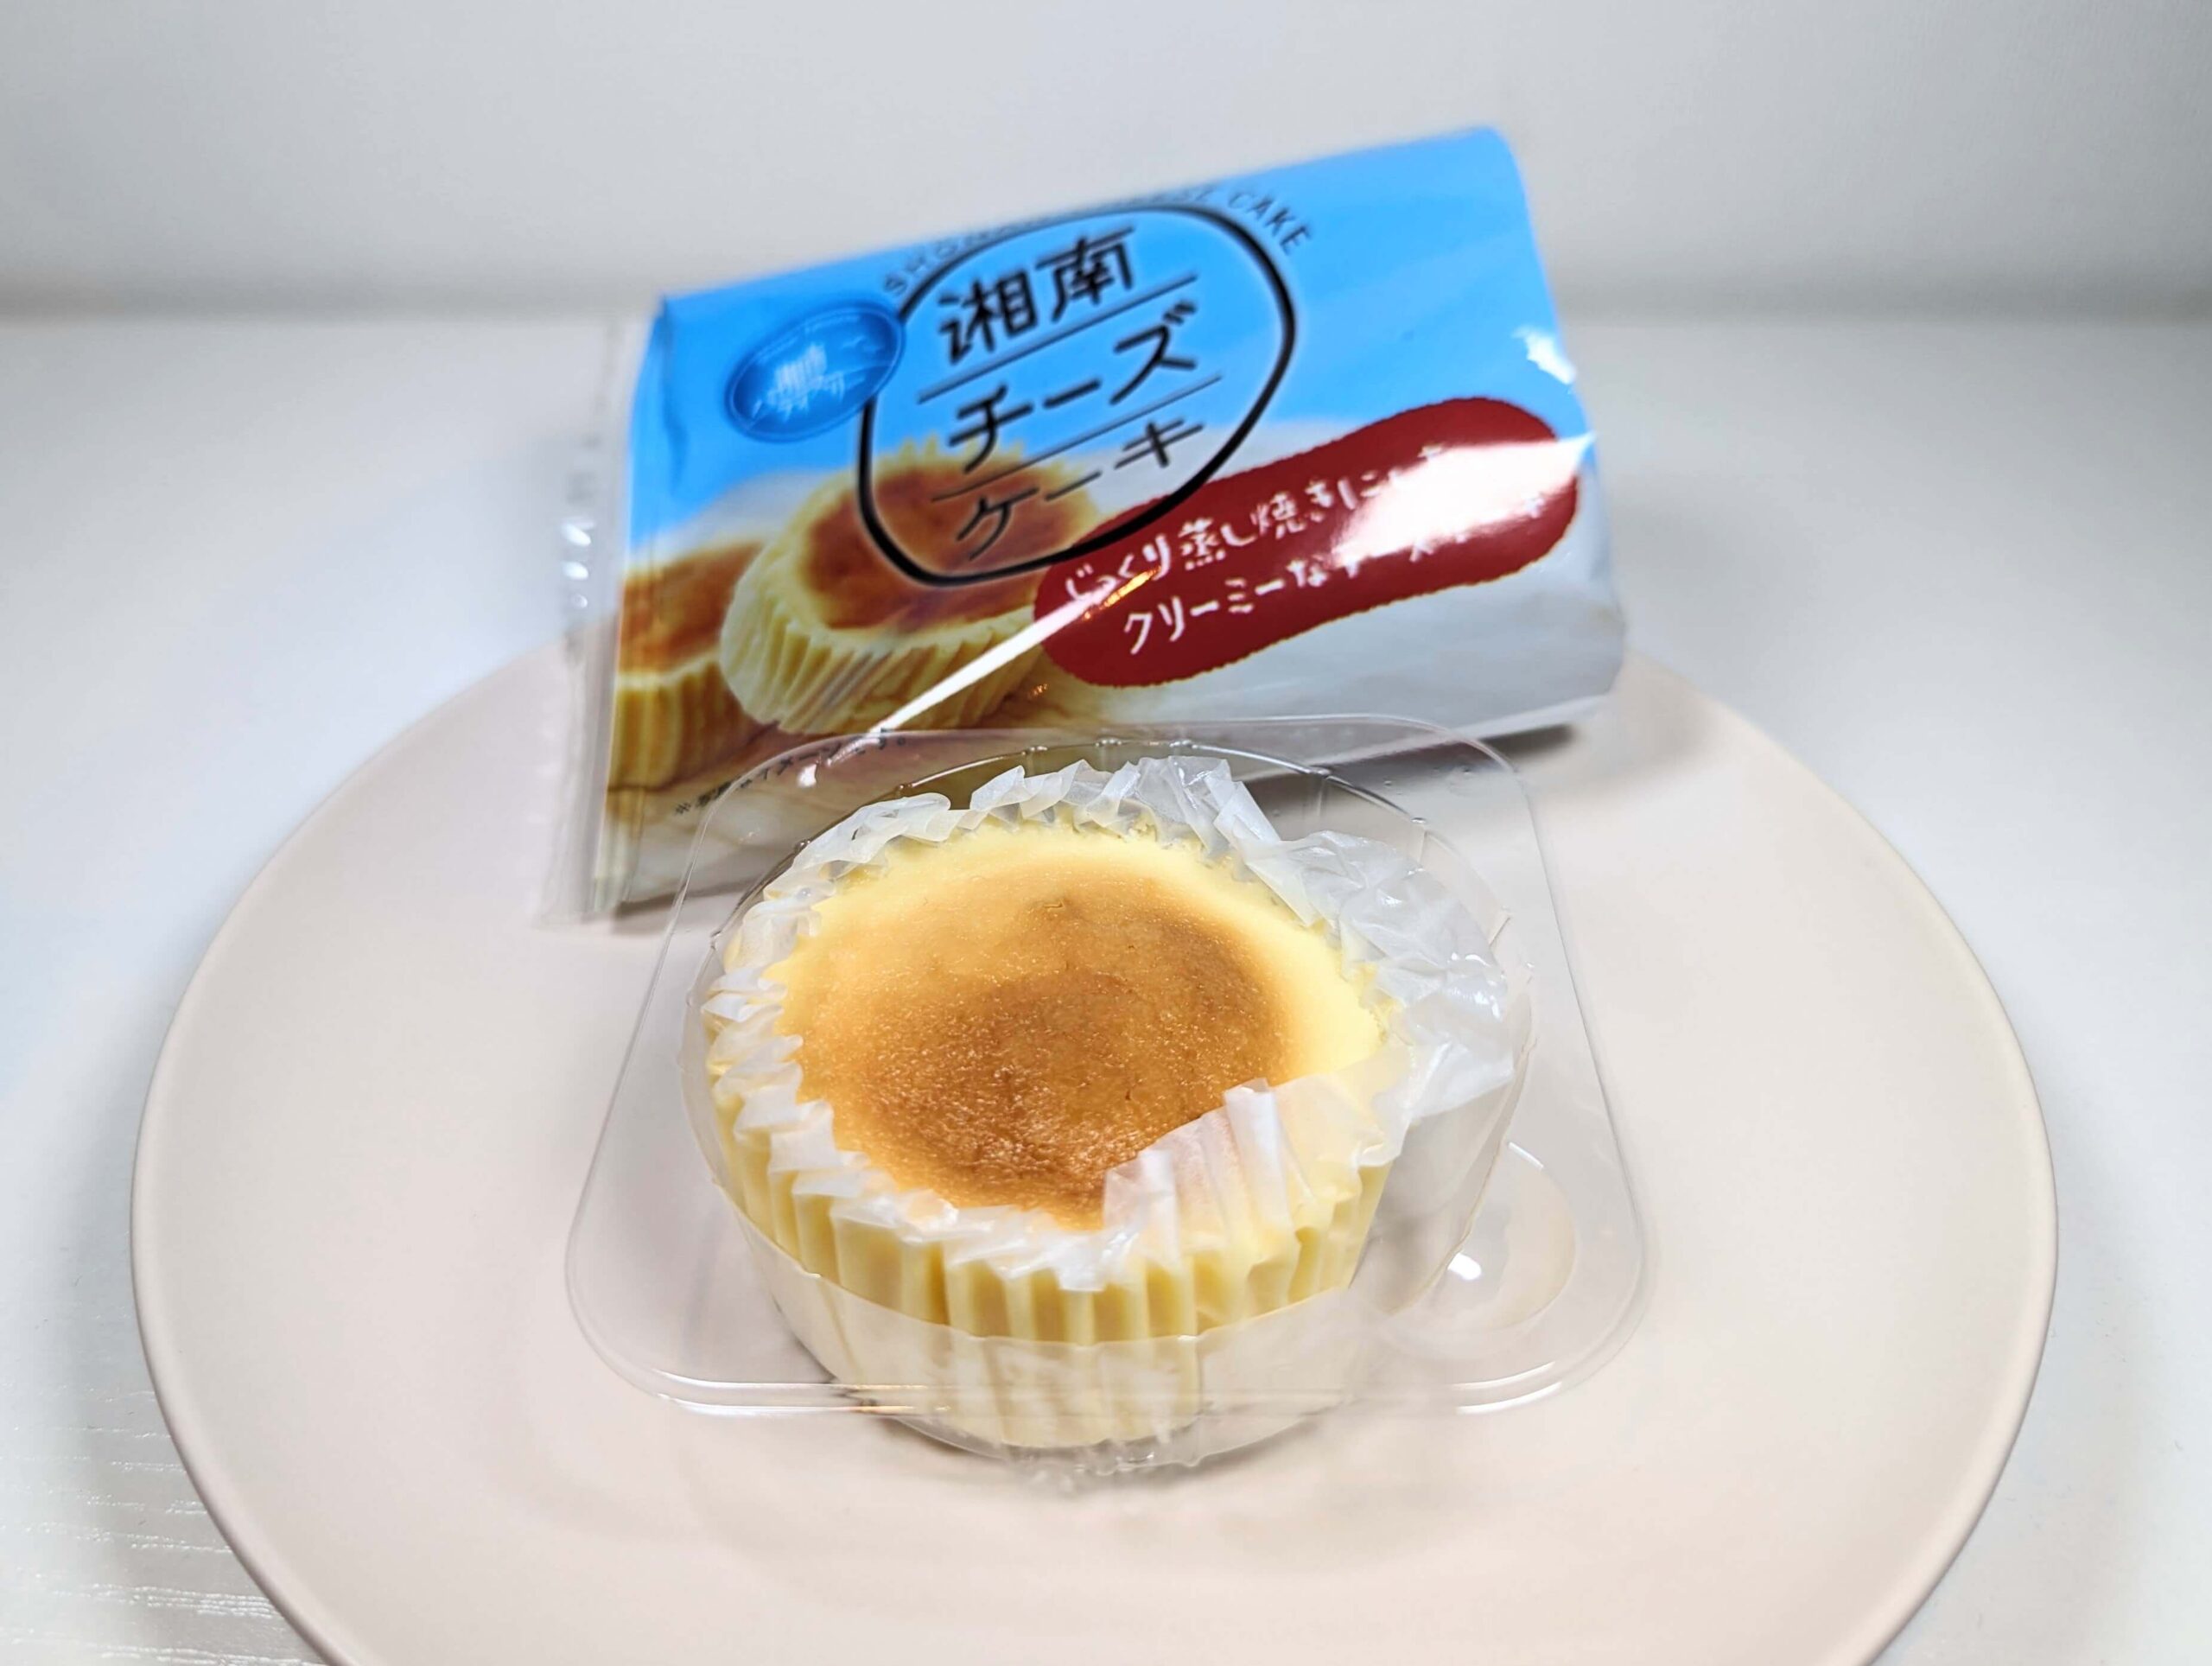 カンパーニュの「湘南チーズケーキ」 (3)